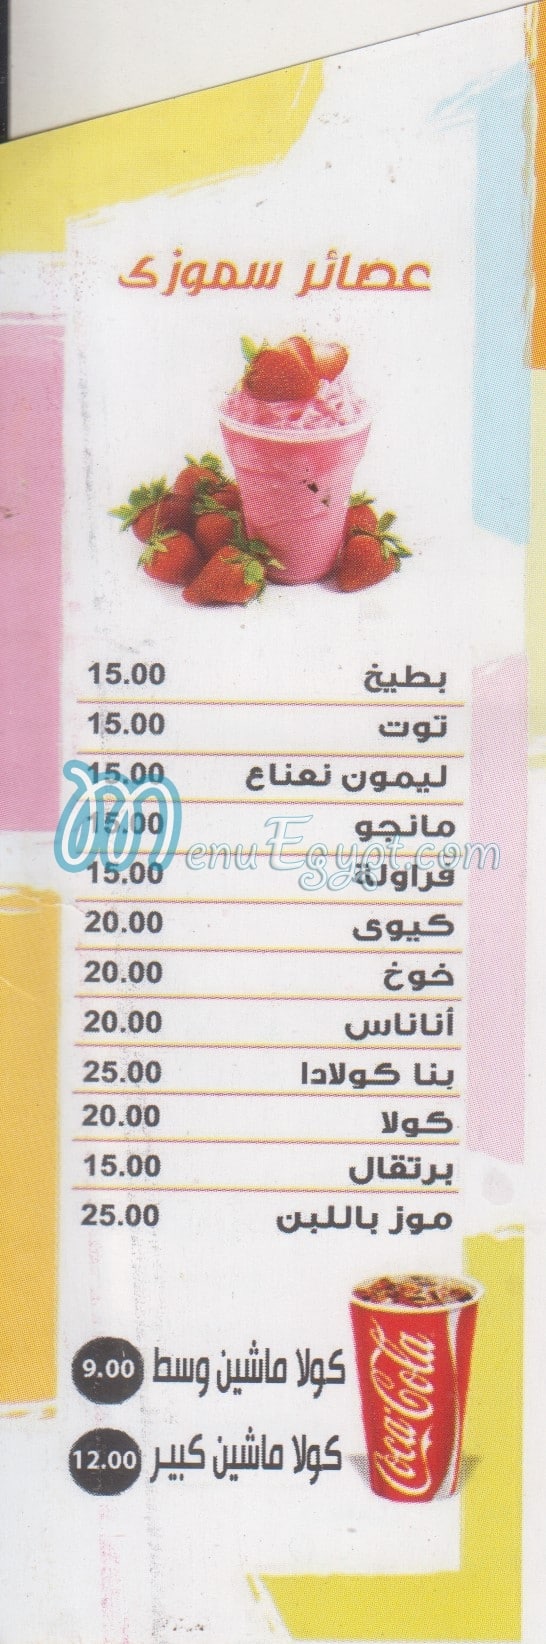 Le Beistro menu Egypt 1